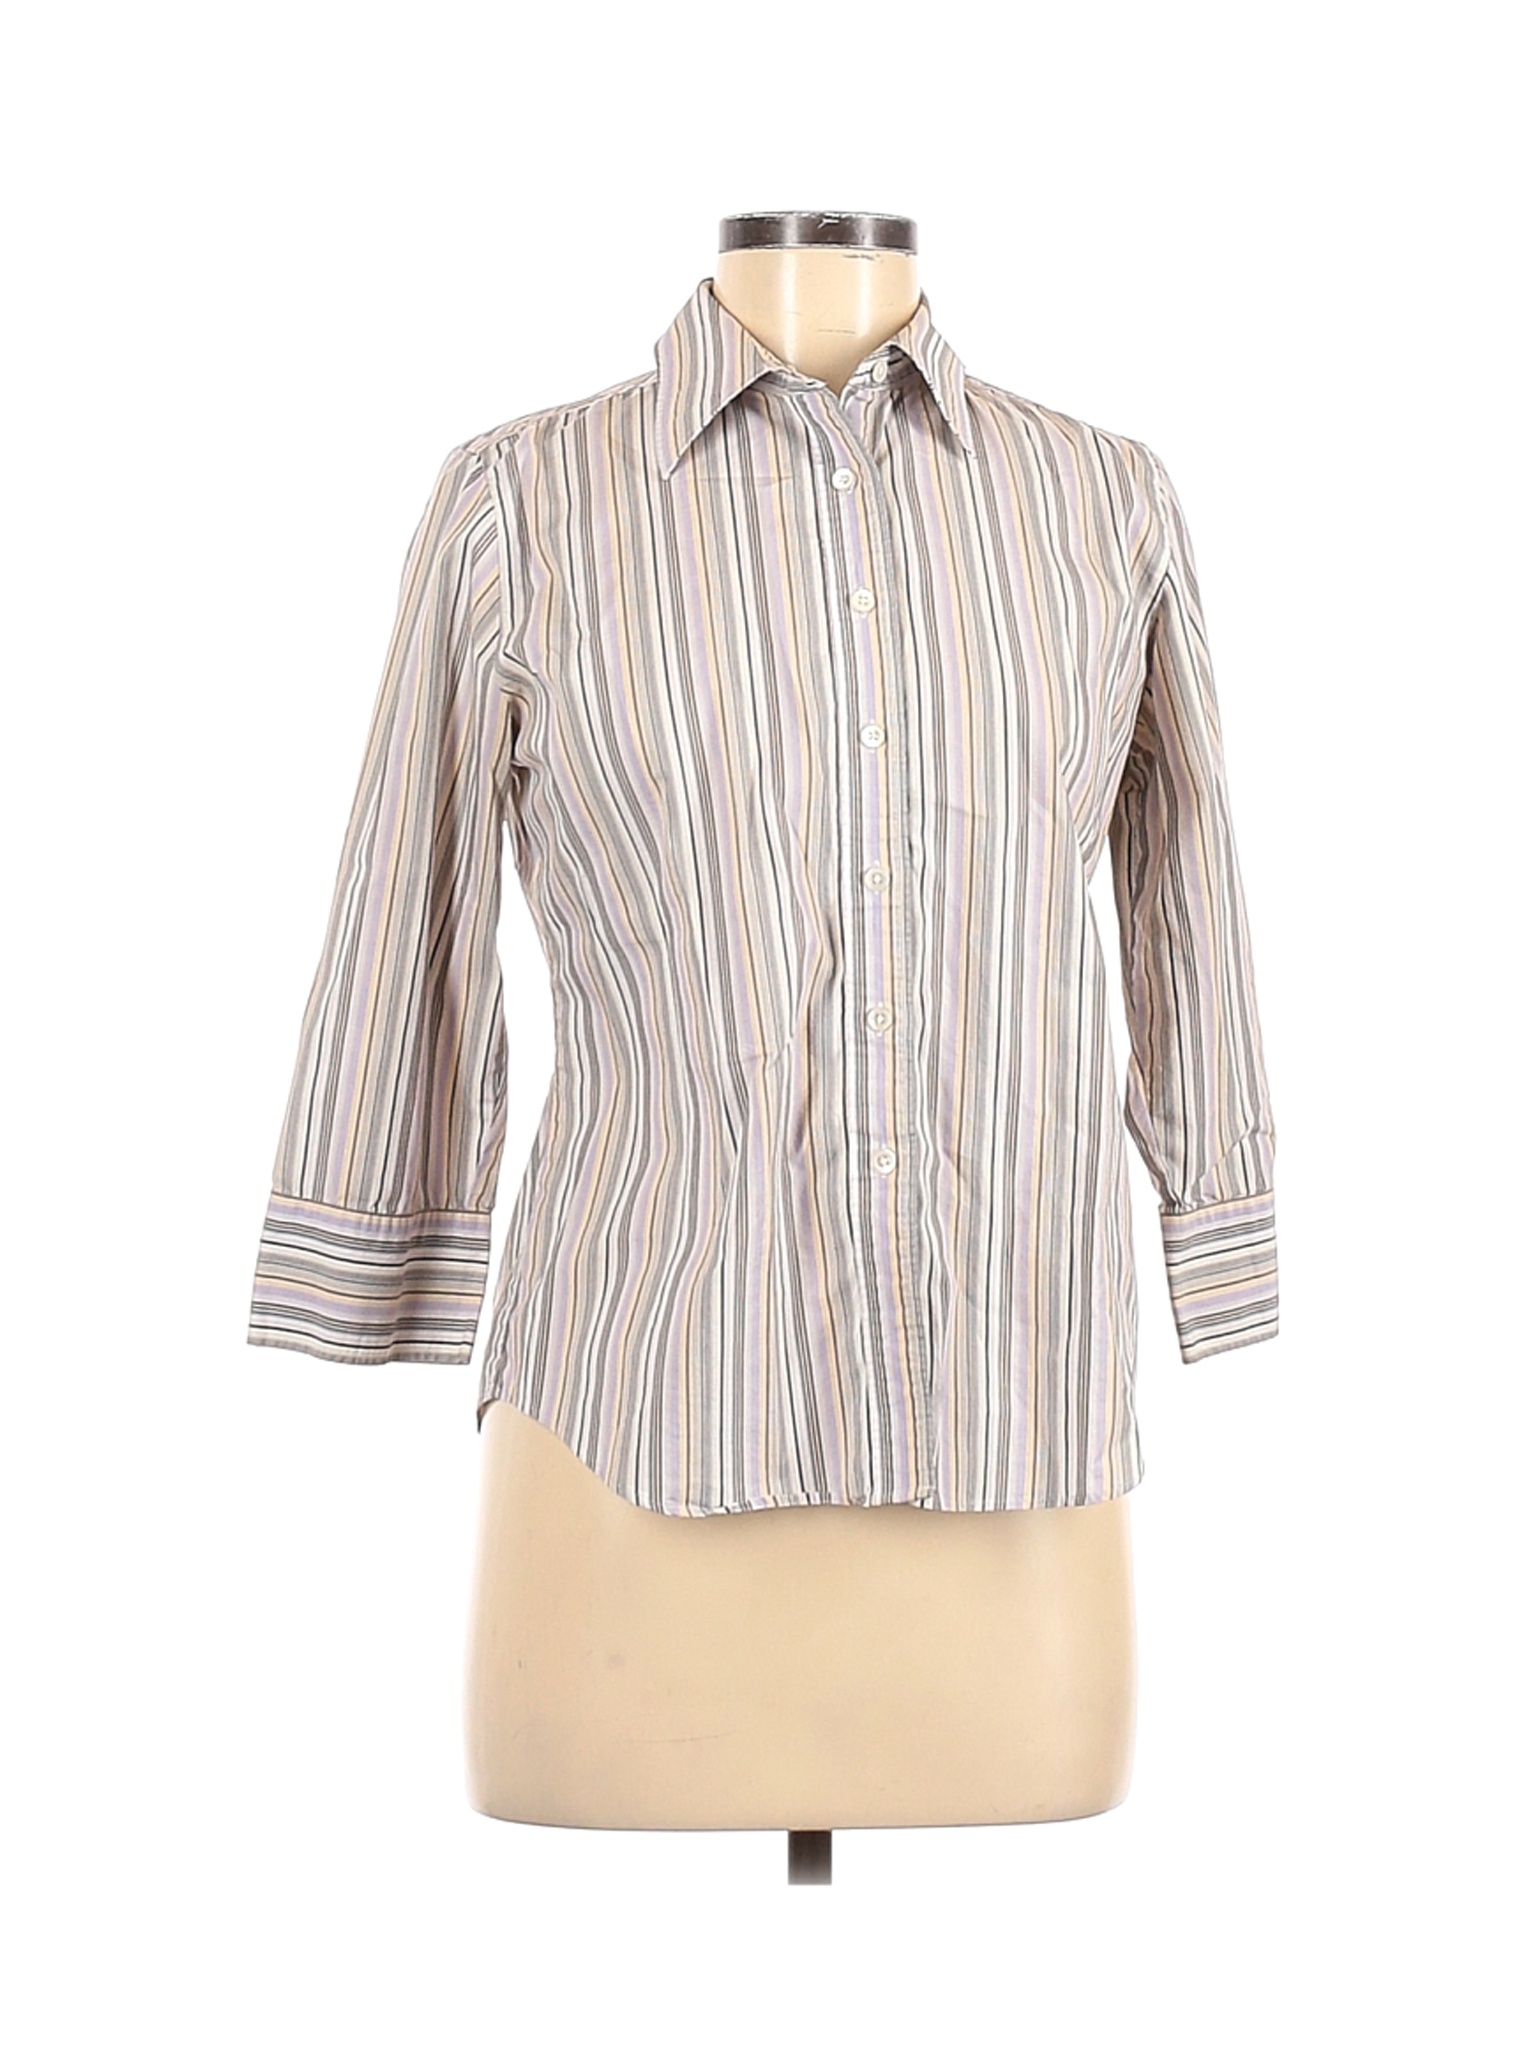 Lands' End Women Ivory Long Sleeve Button-Down Shirt 8 | eBay